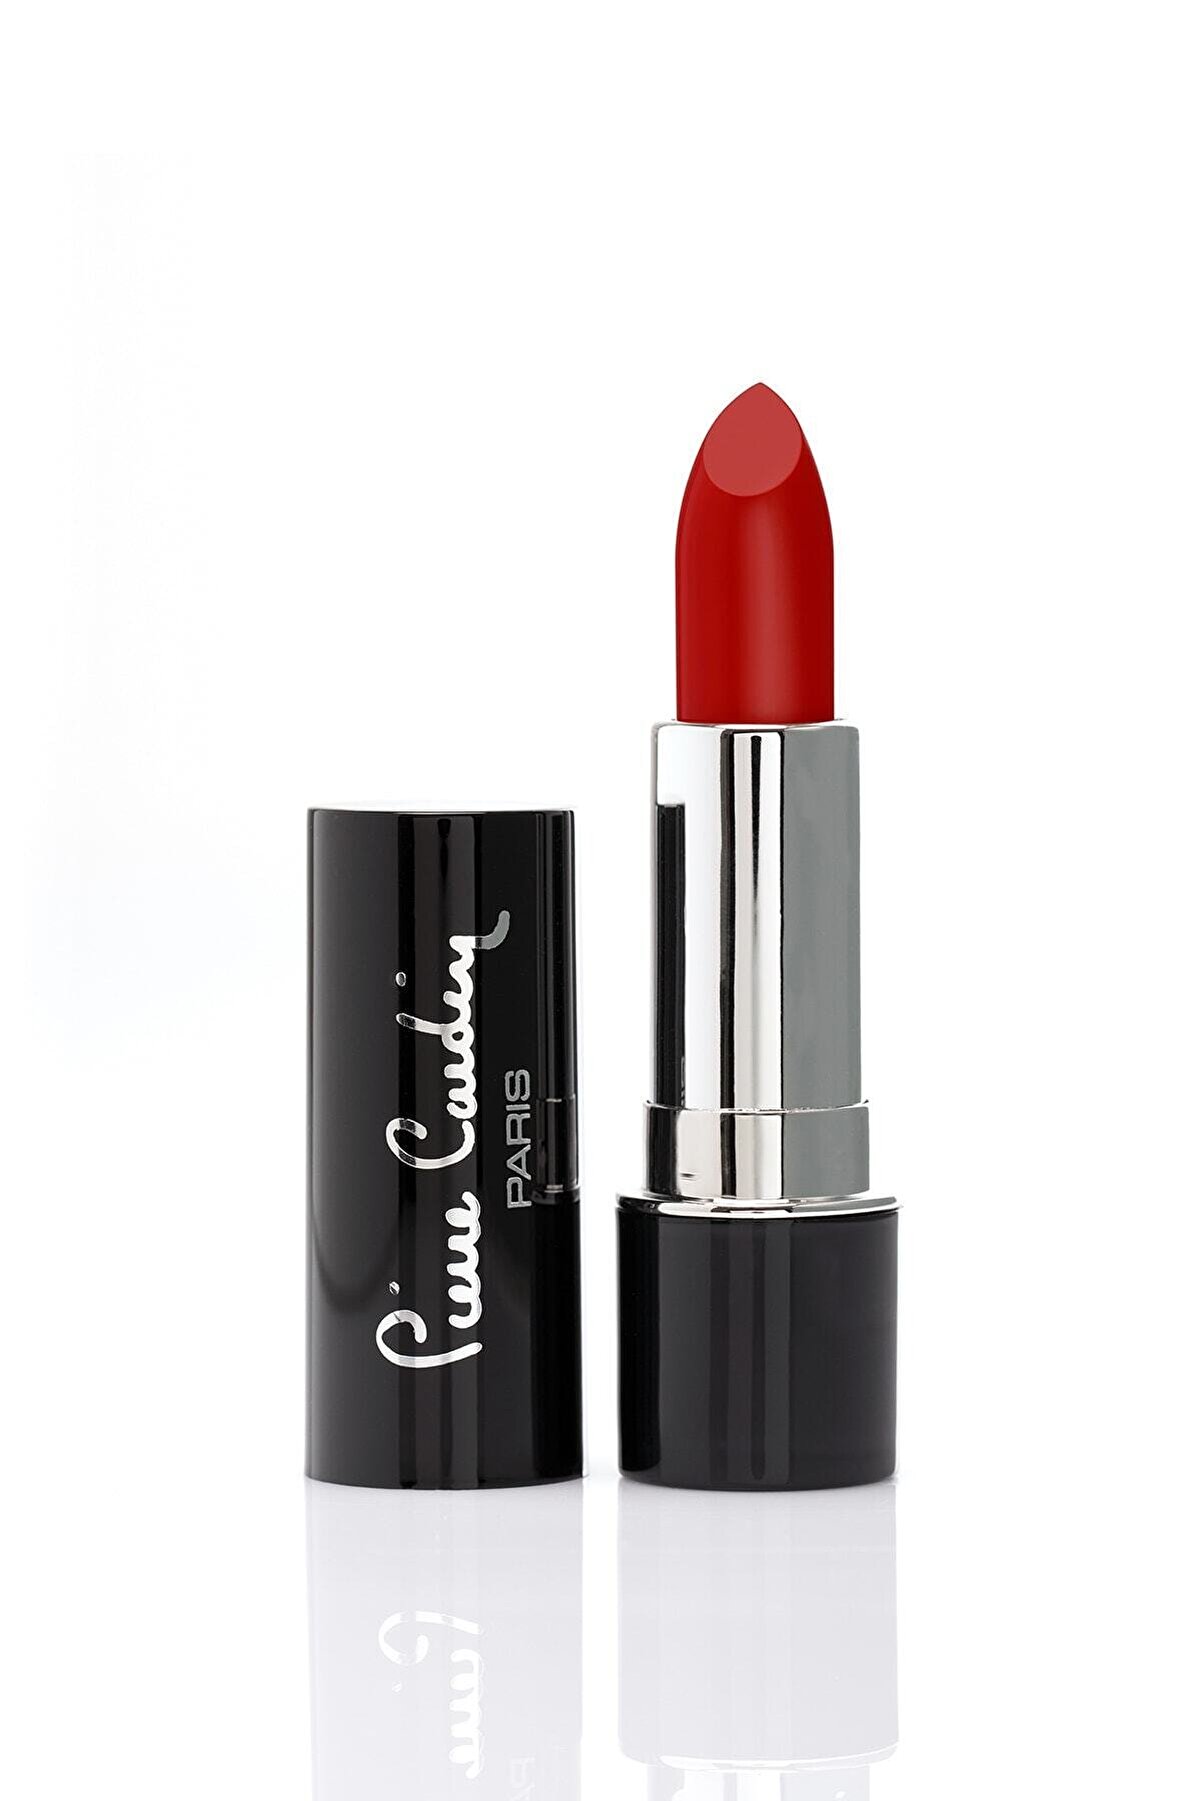 Pierre Cardin Red Matte Edition Lipstick Bright Ruj 213 8680570486569